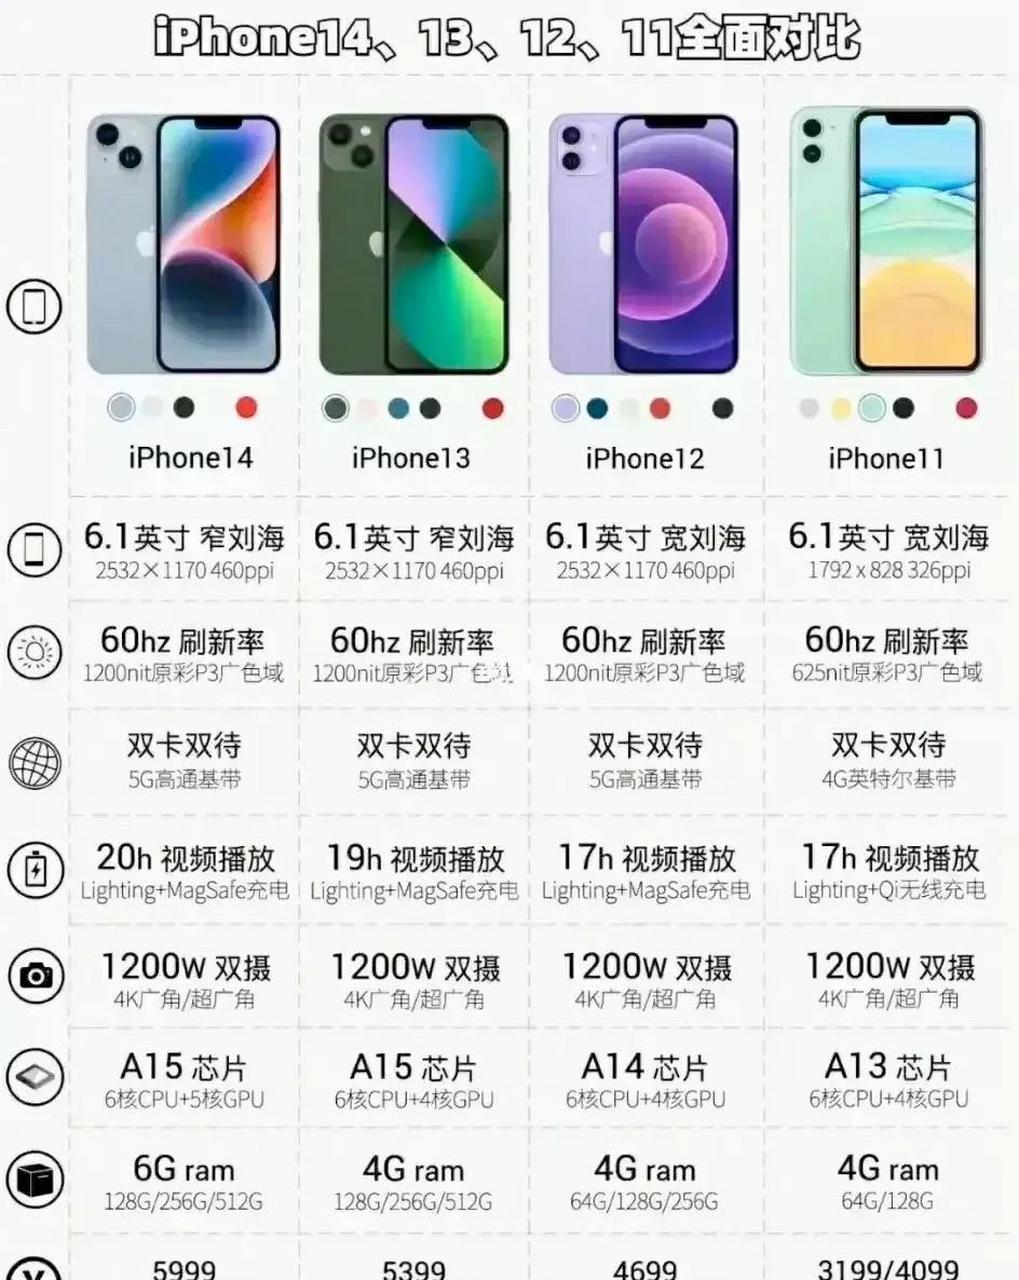 苹果到底有多强,看看iphone 14,13,12,11的全面对比就知道了